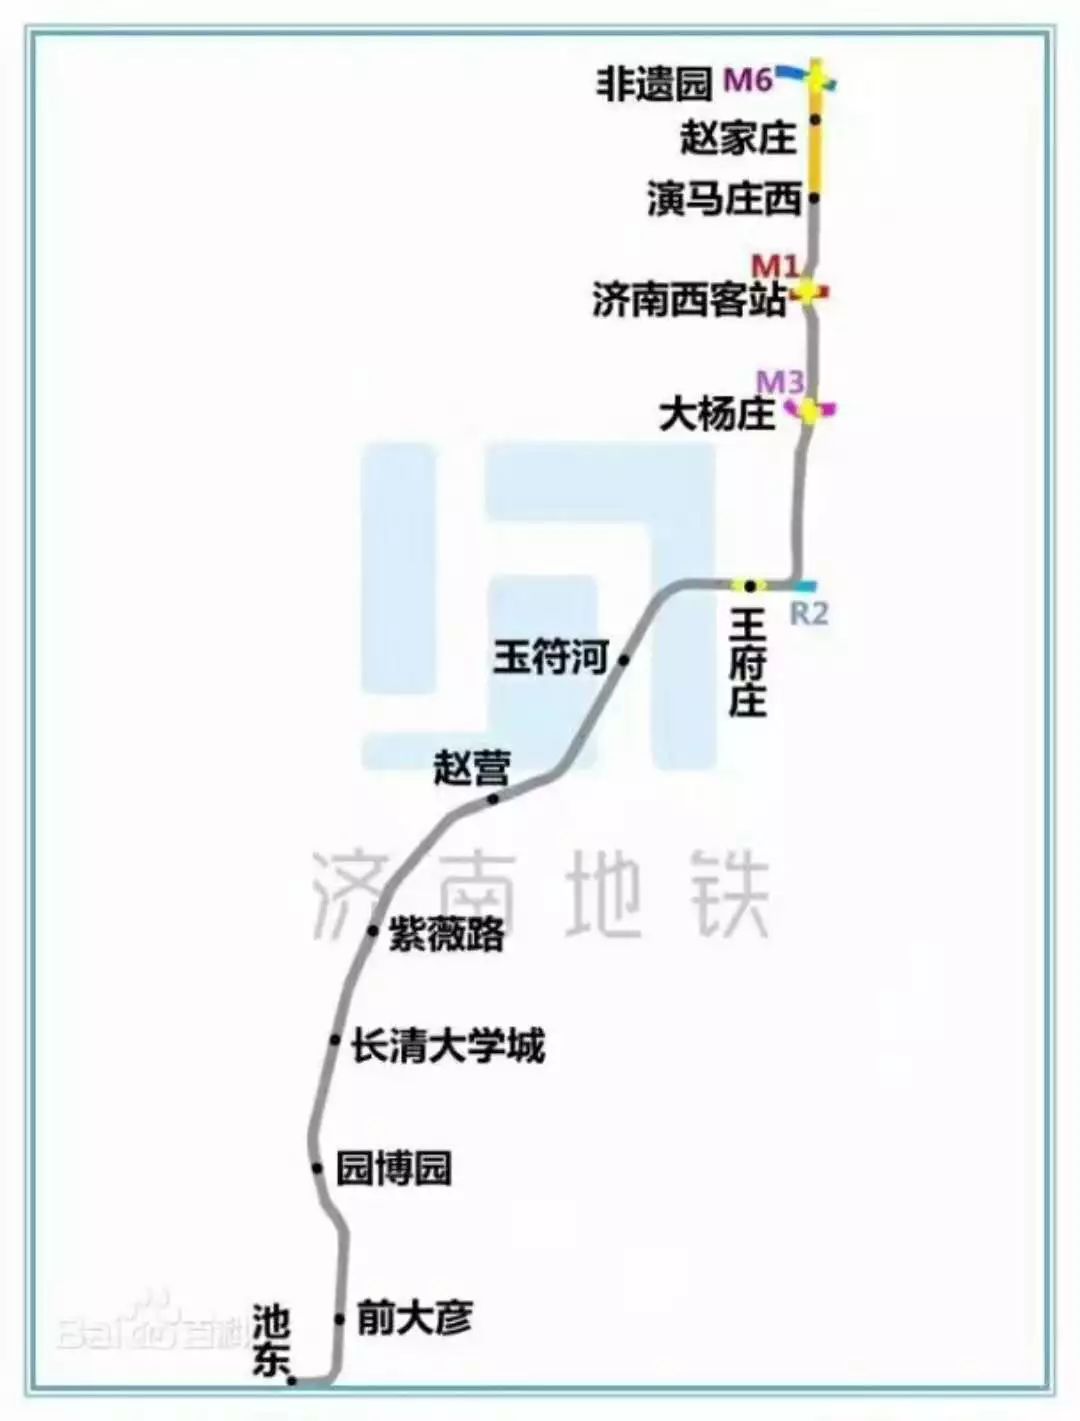 济南m3线站点详细位置图片